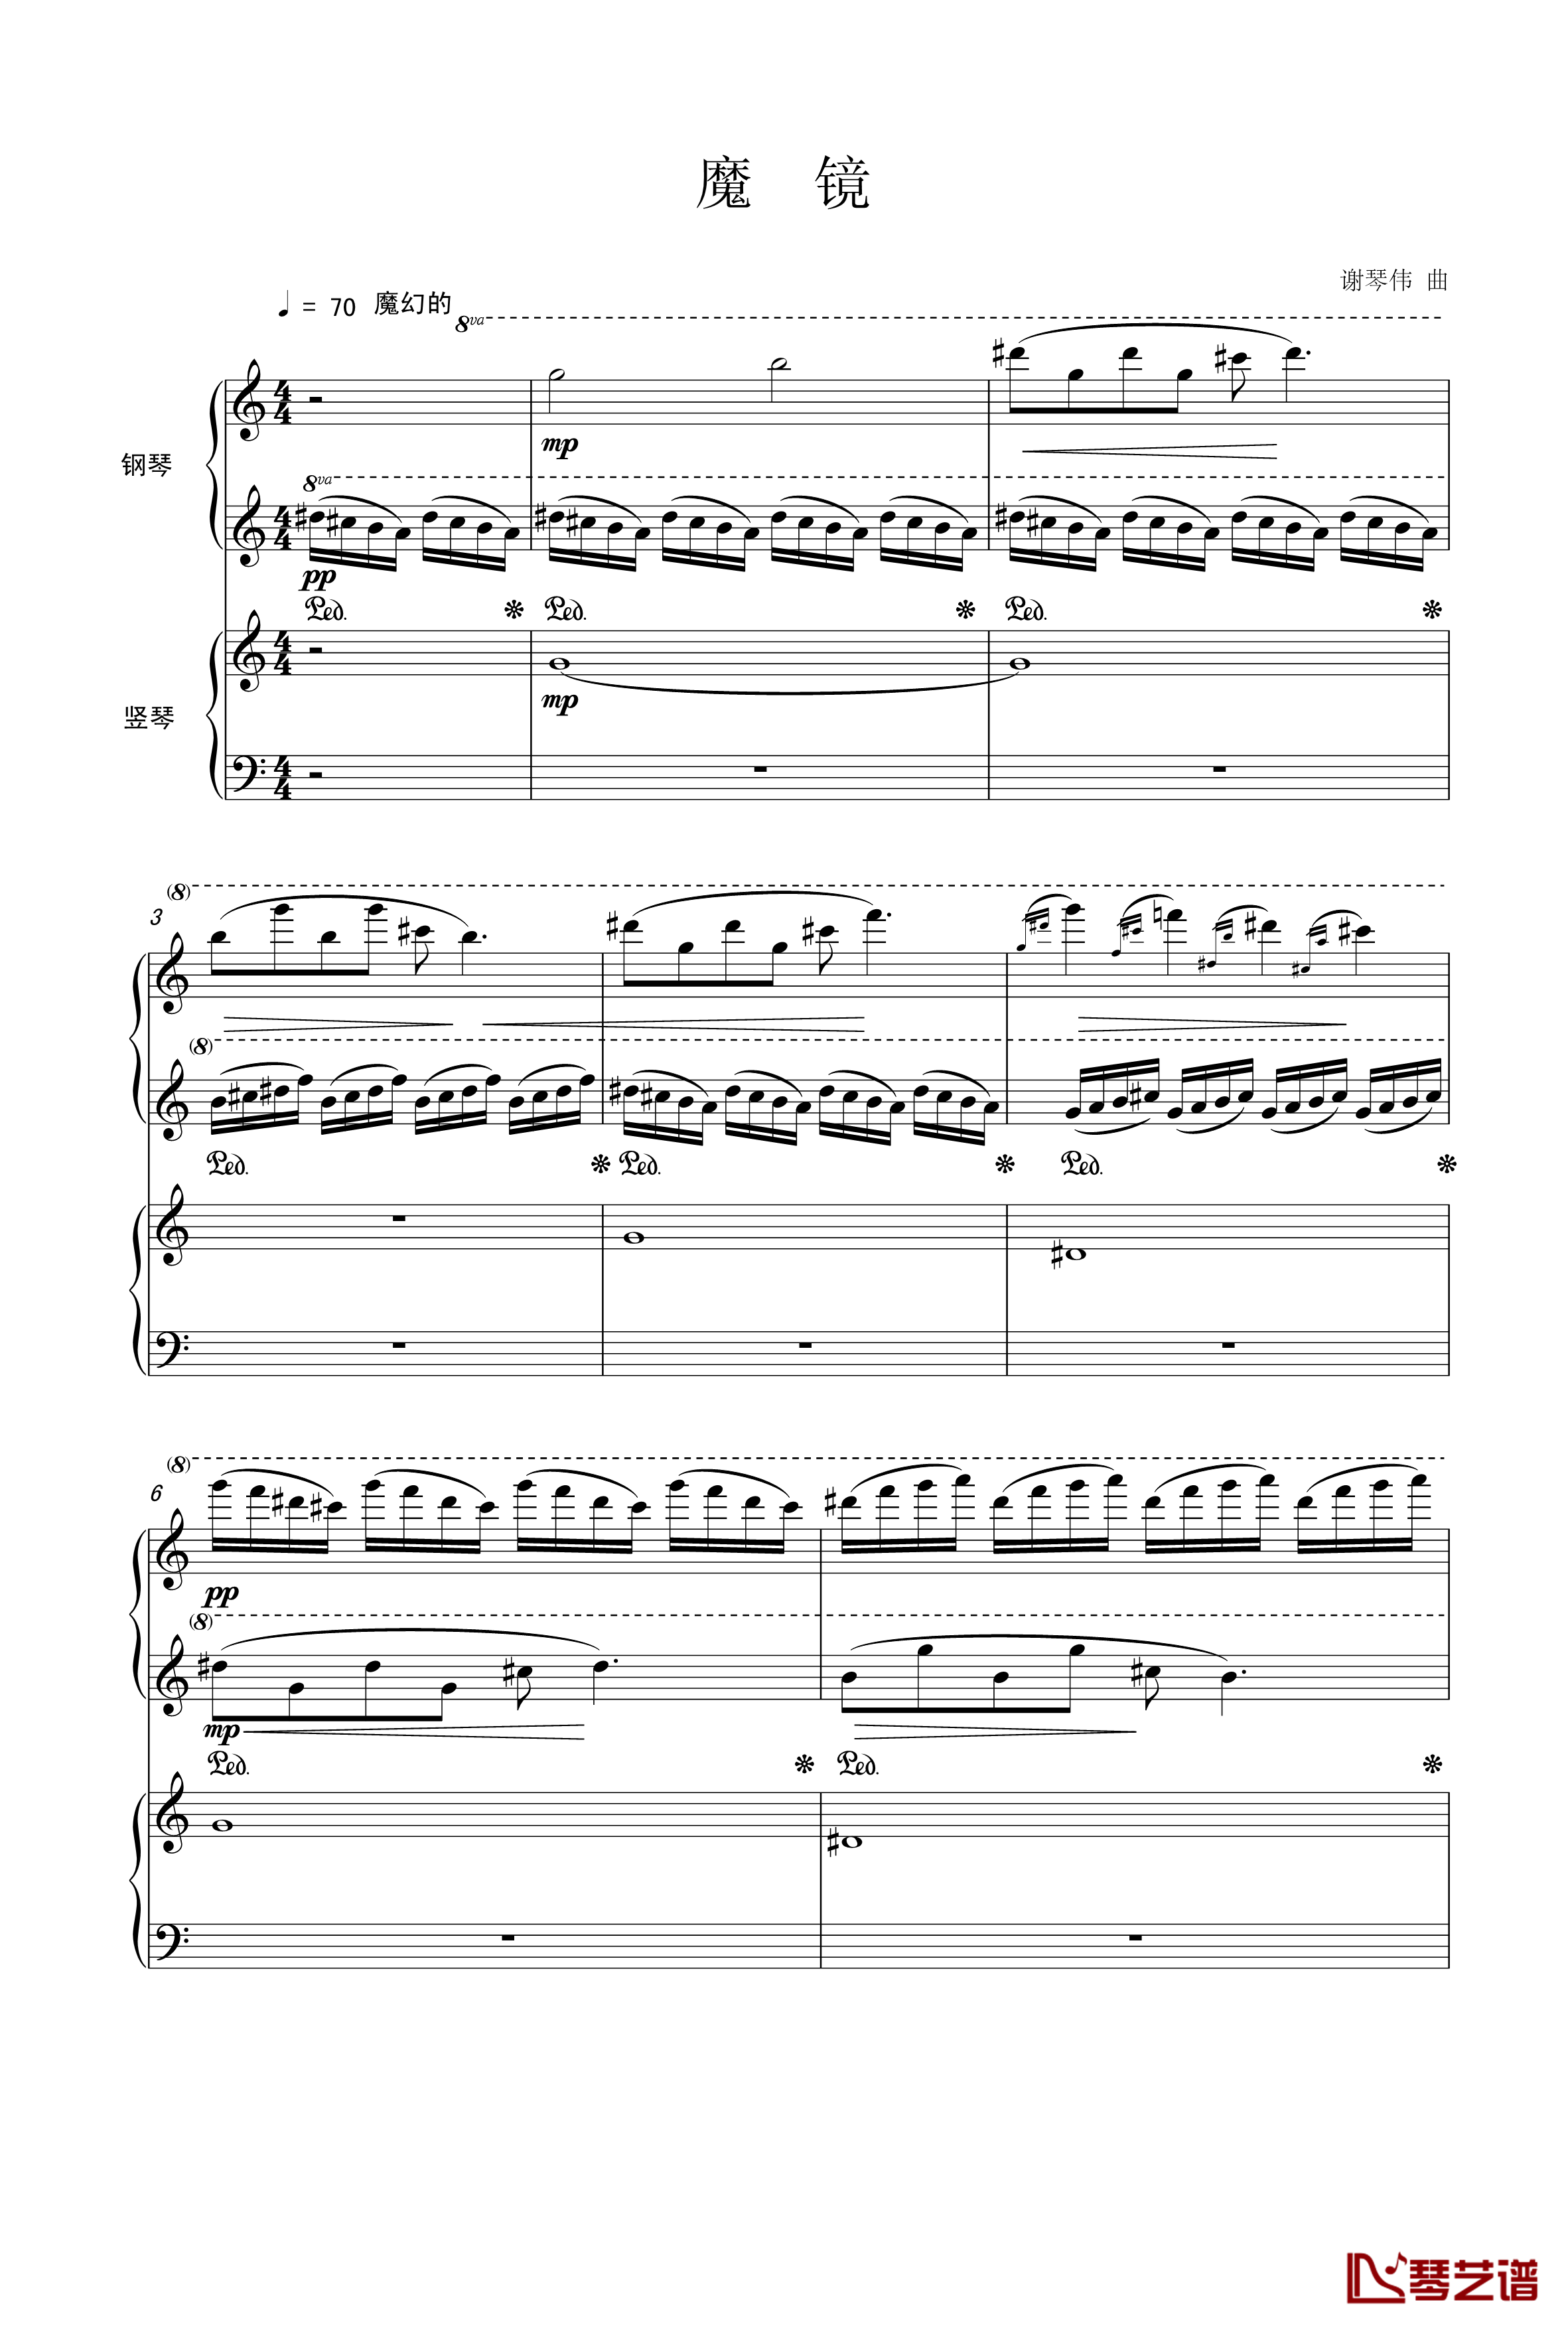 魔镜钢琴谱-曲乐曲乐乐1